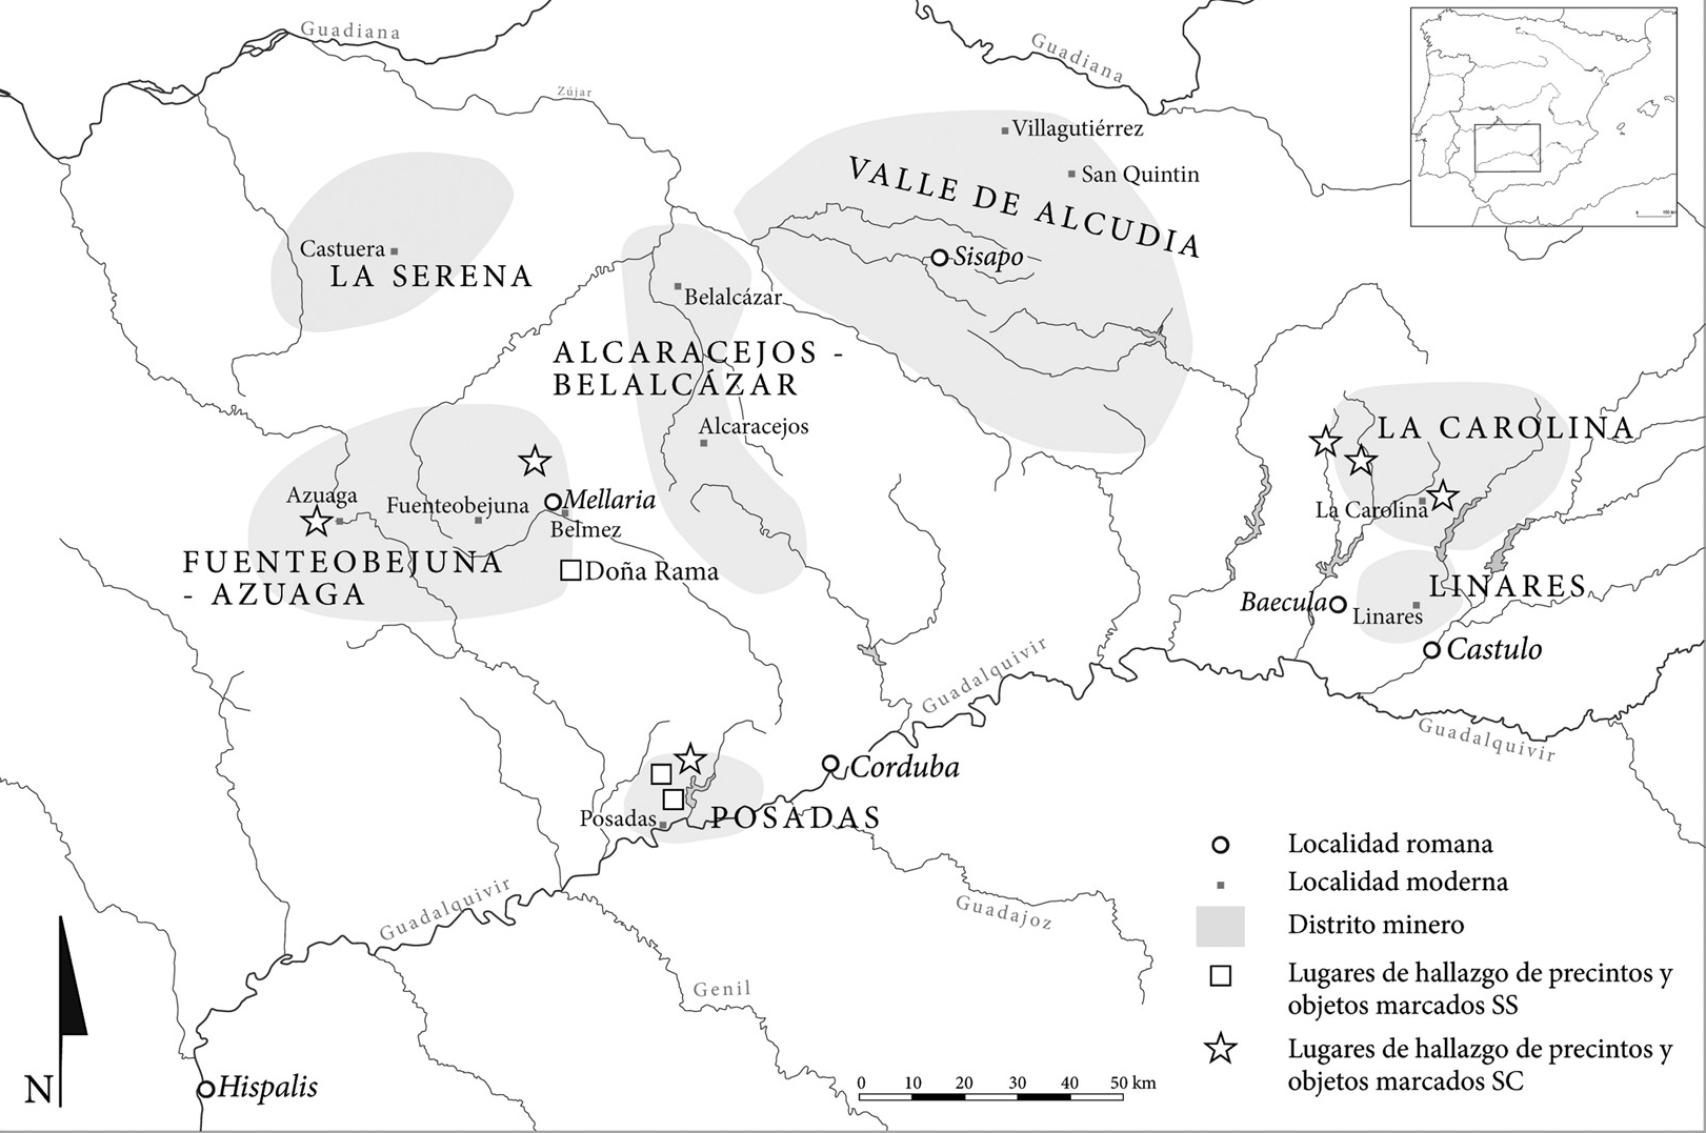 Mapa de los distritos mineros de Sierra Morena en época romana.